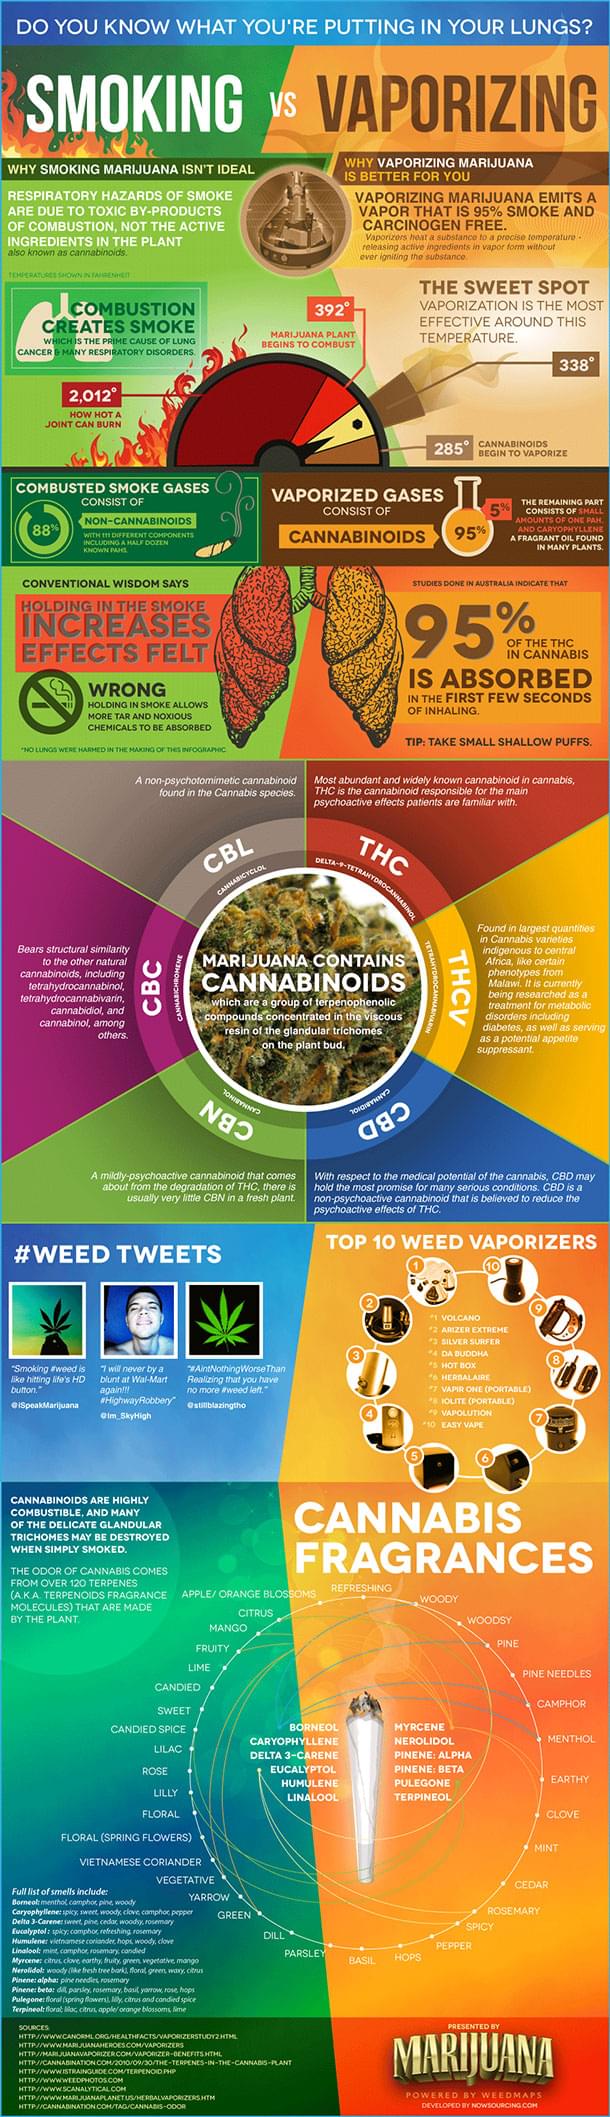 Smoking Cannabis vs Vaporizing Cannabis